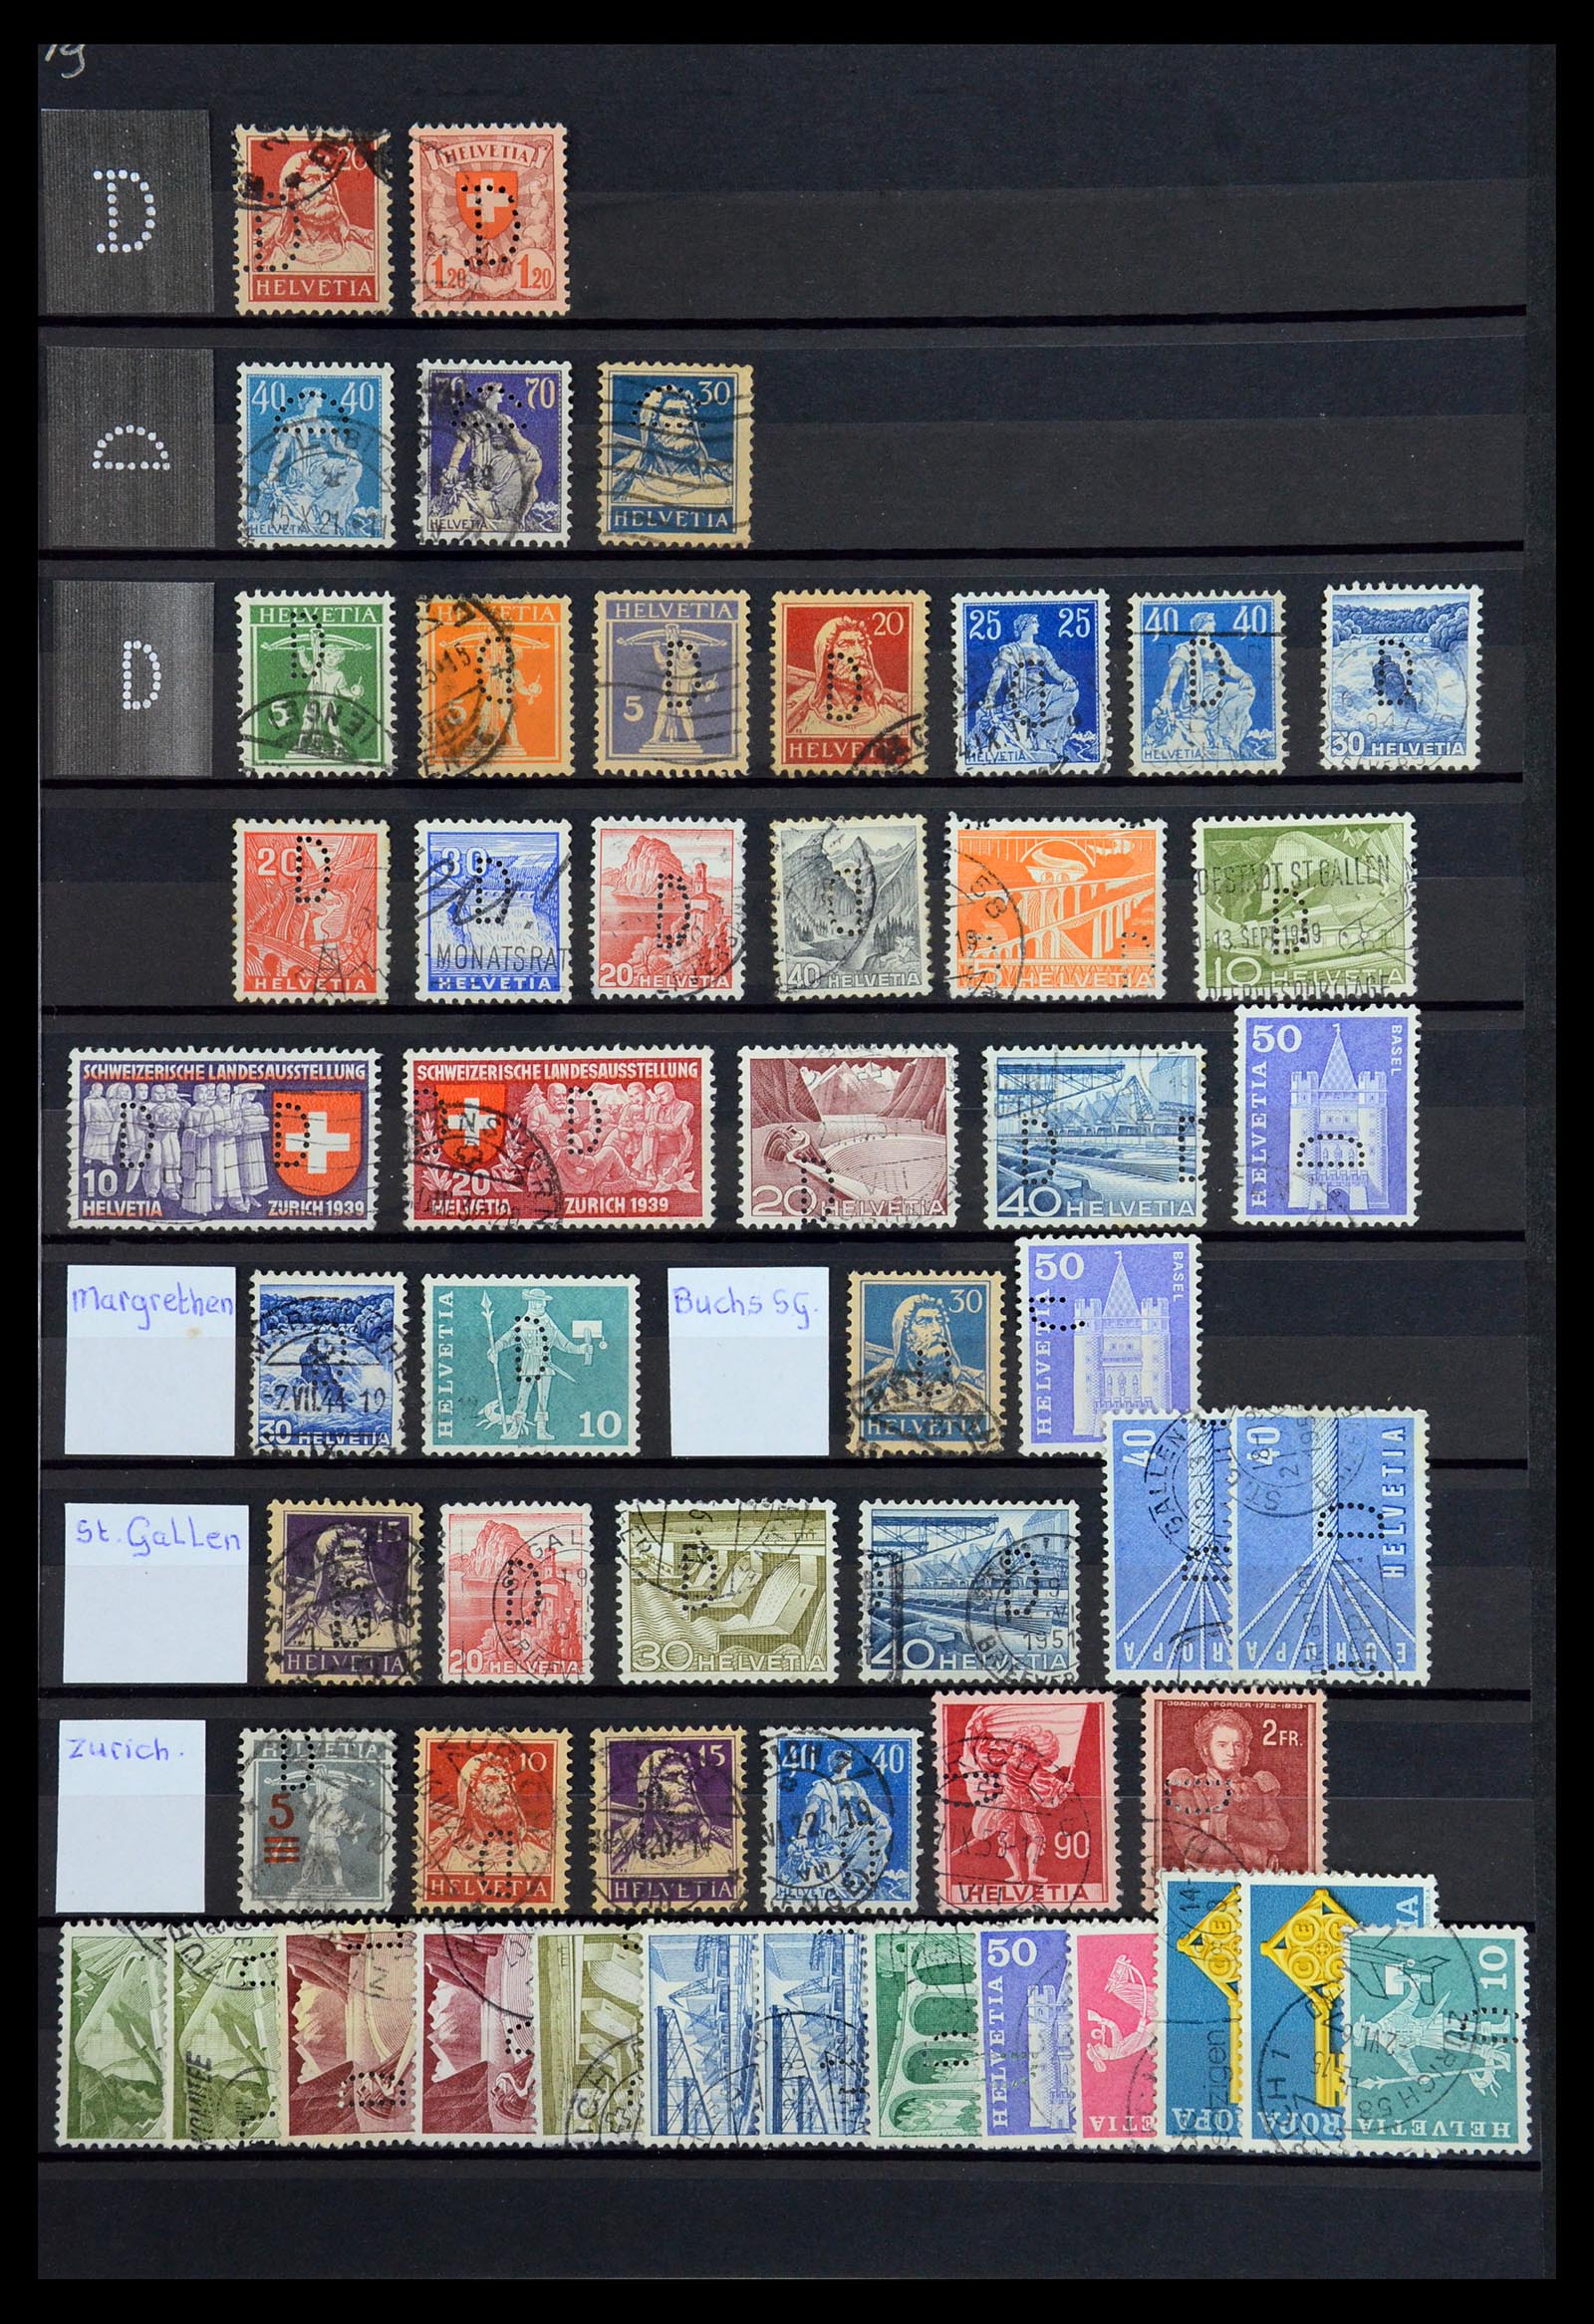 36372 013 - Stamp collection 36372 Switzerland perfins 1880-1960.